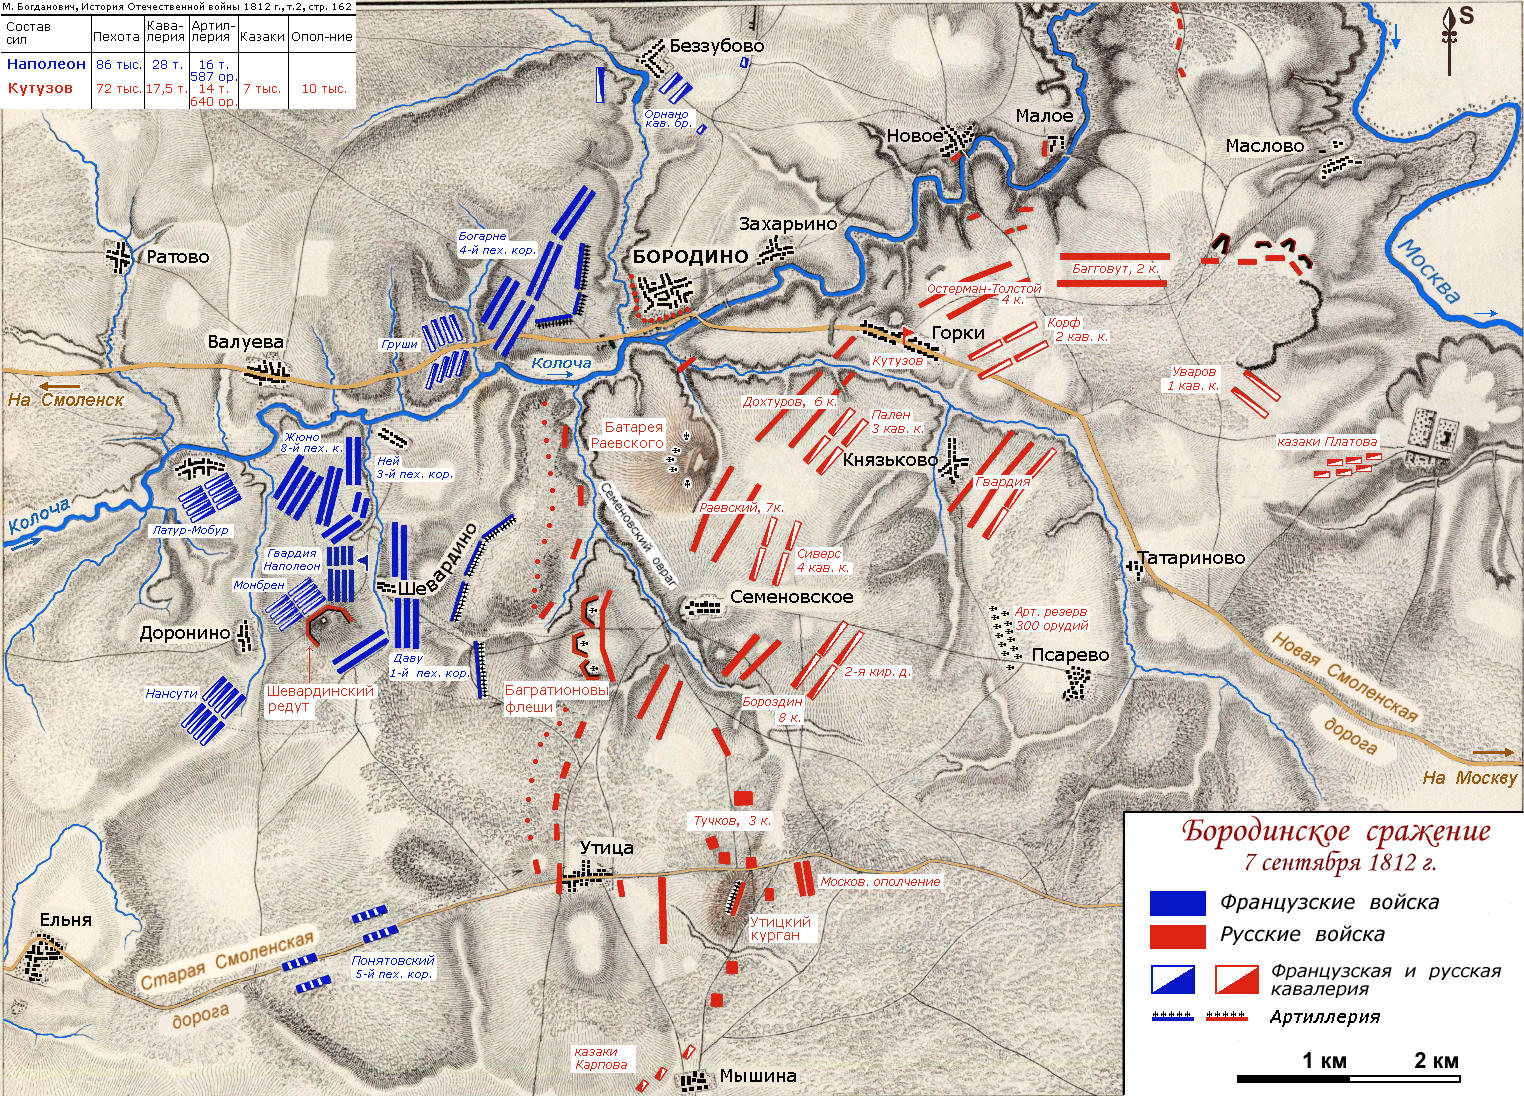 Схема диспозиции сил к утру 26 августа (7 сентября) 1812 года, перед Бородинским сражением